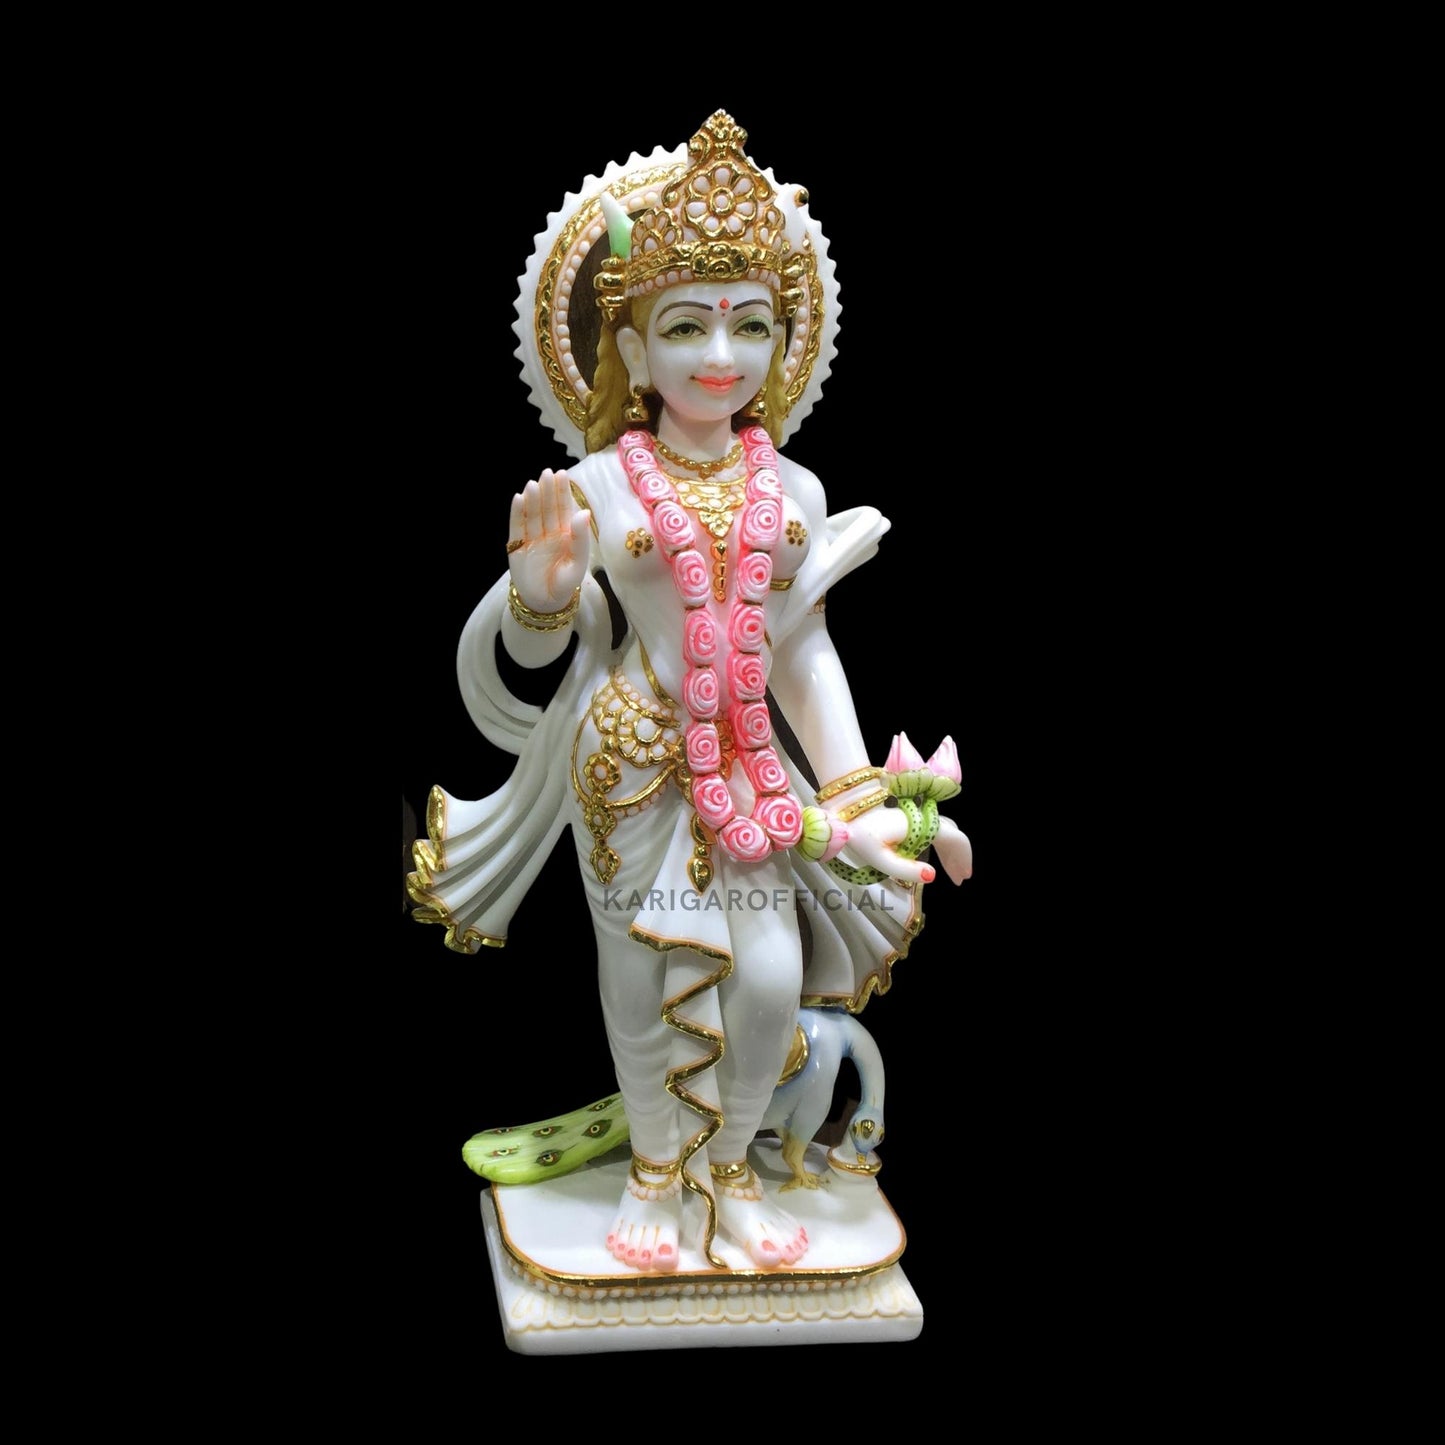 Estatua de Radha Krishna, estatuilla de trabajo de hoja de oro, ídolo grande de Radha Krishna de mármol de 24 pulgadas, pareja divina hindú Murti pintada a mano, decoración de Pooja del templo del hogar, escultura de regalos de inauguración de la casa